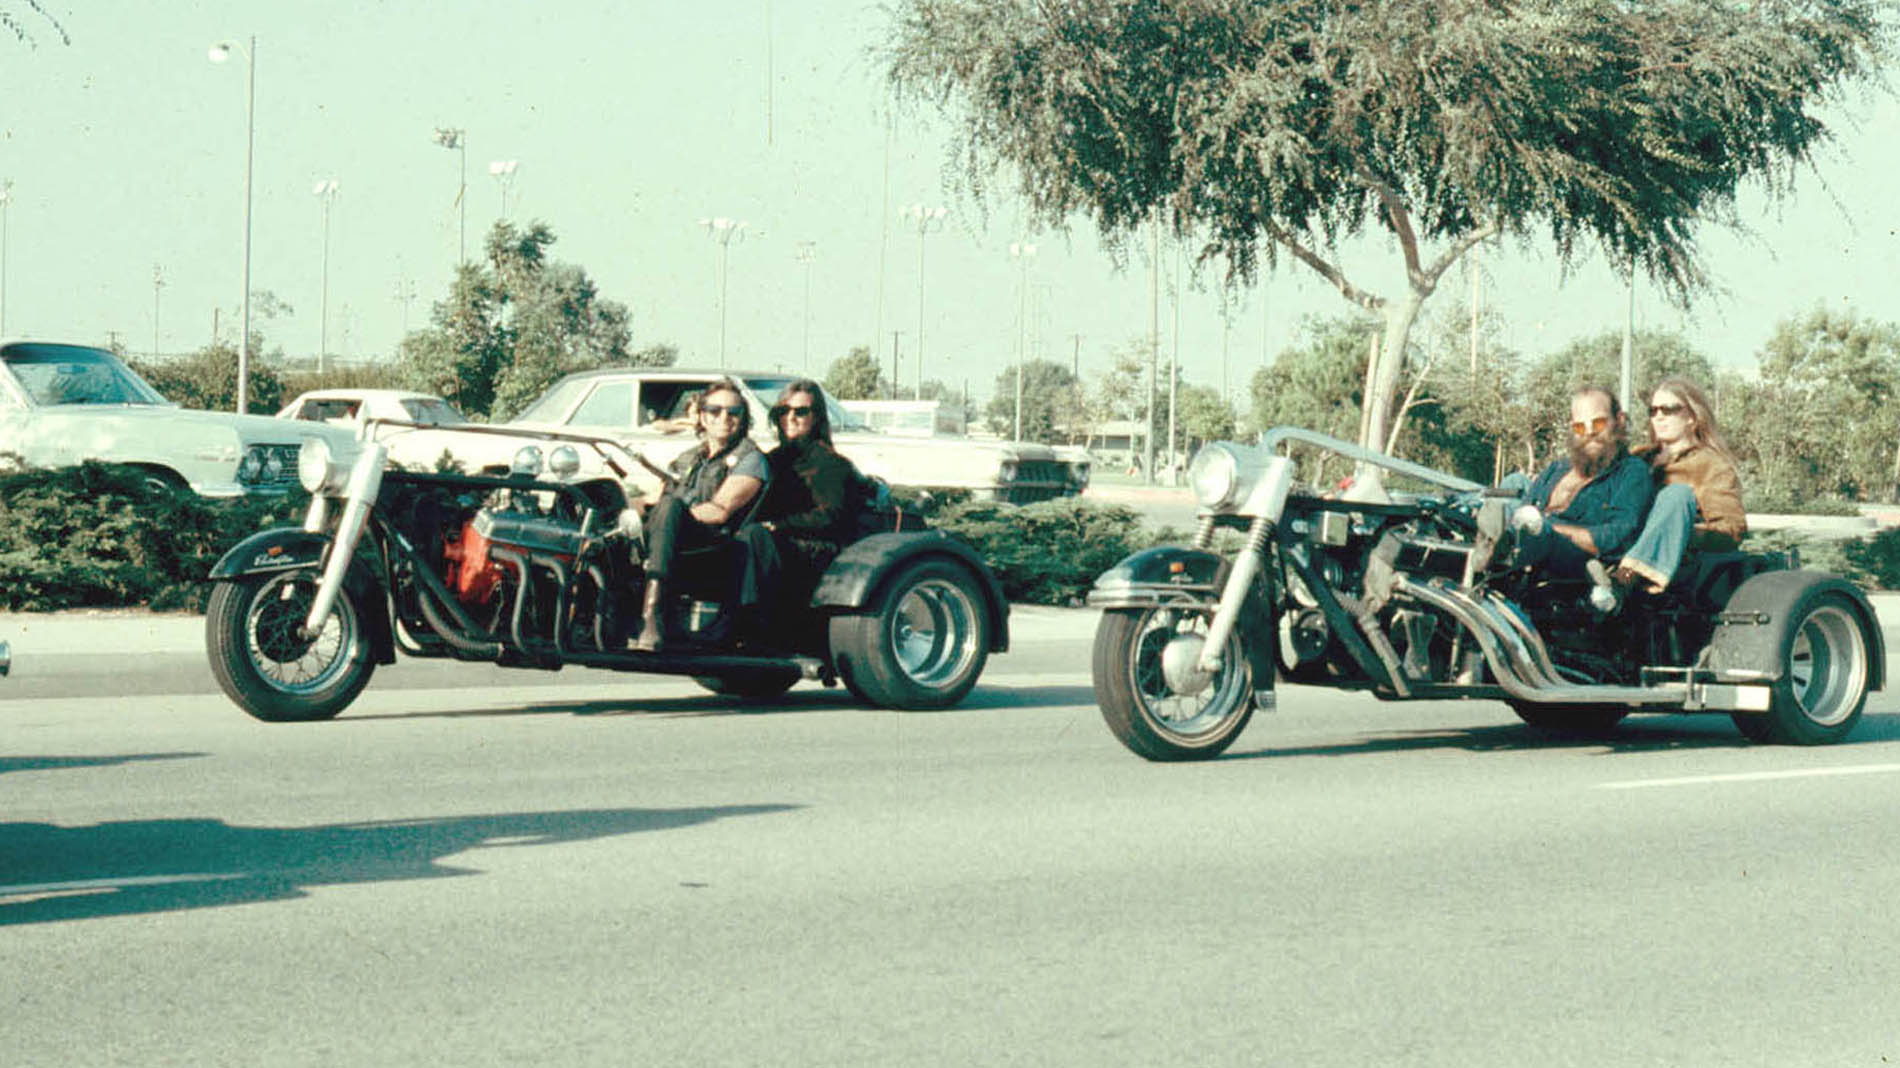 35. The bikers